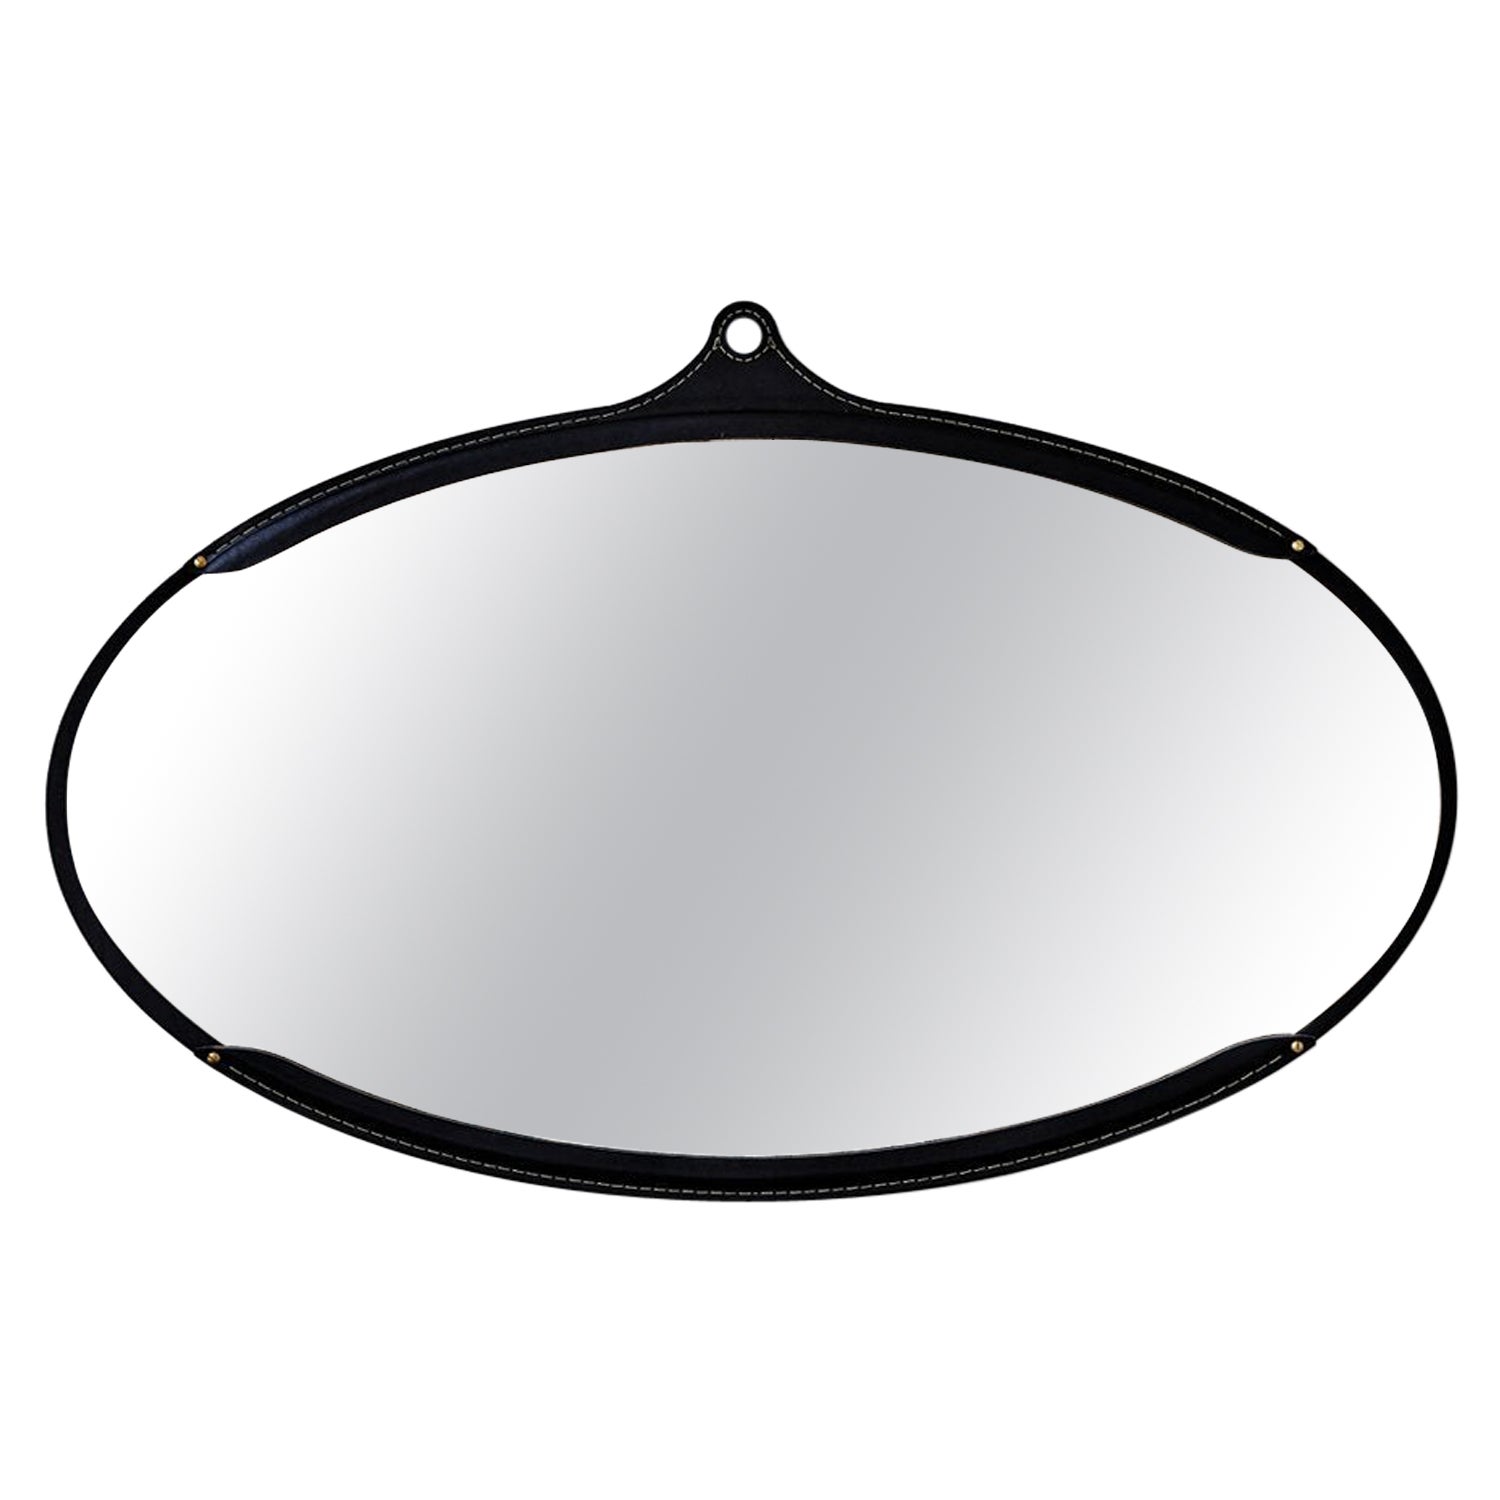 Grand miroir moderne ovale sur pied en cuir noir